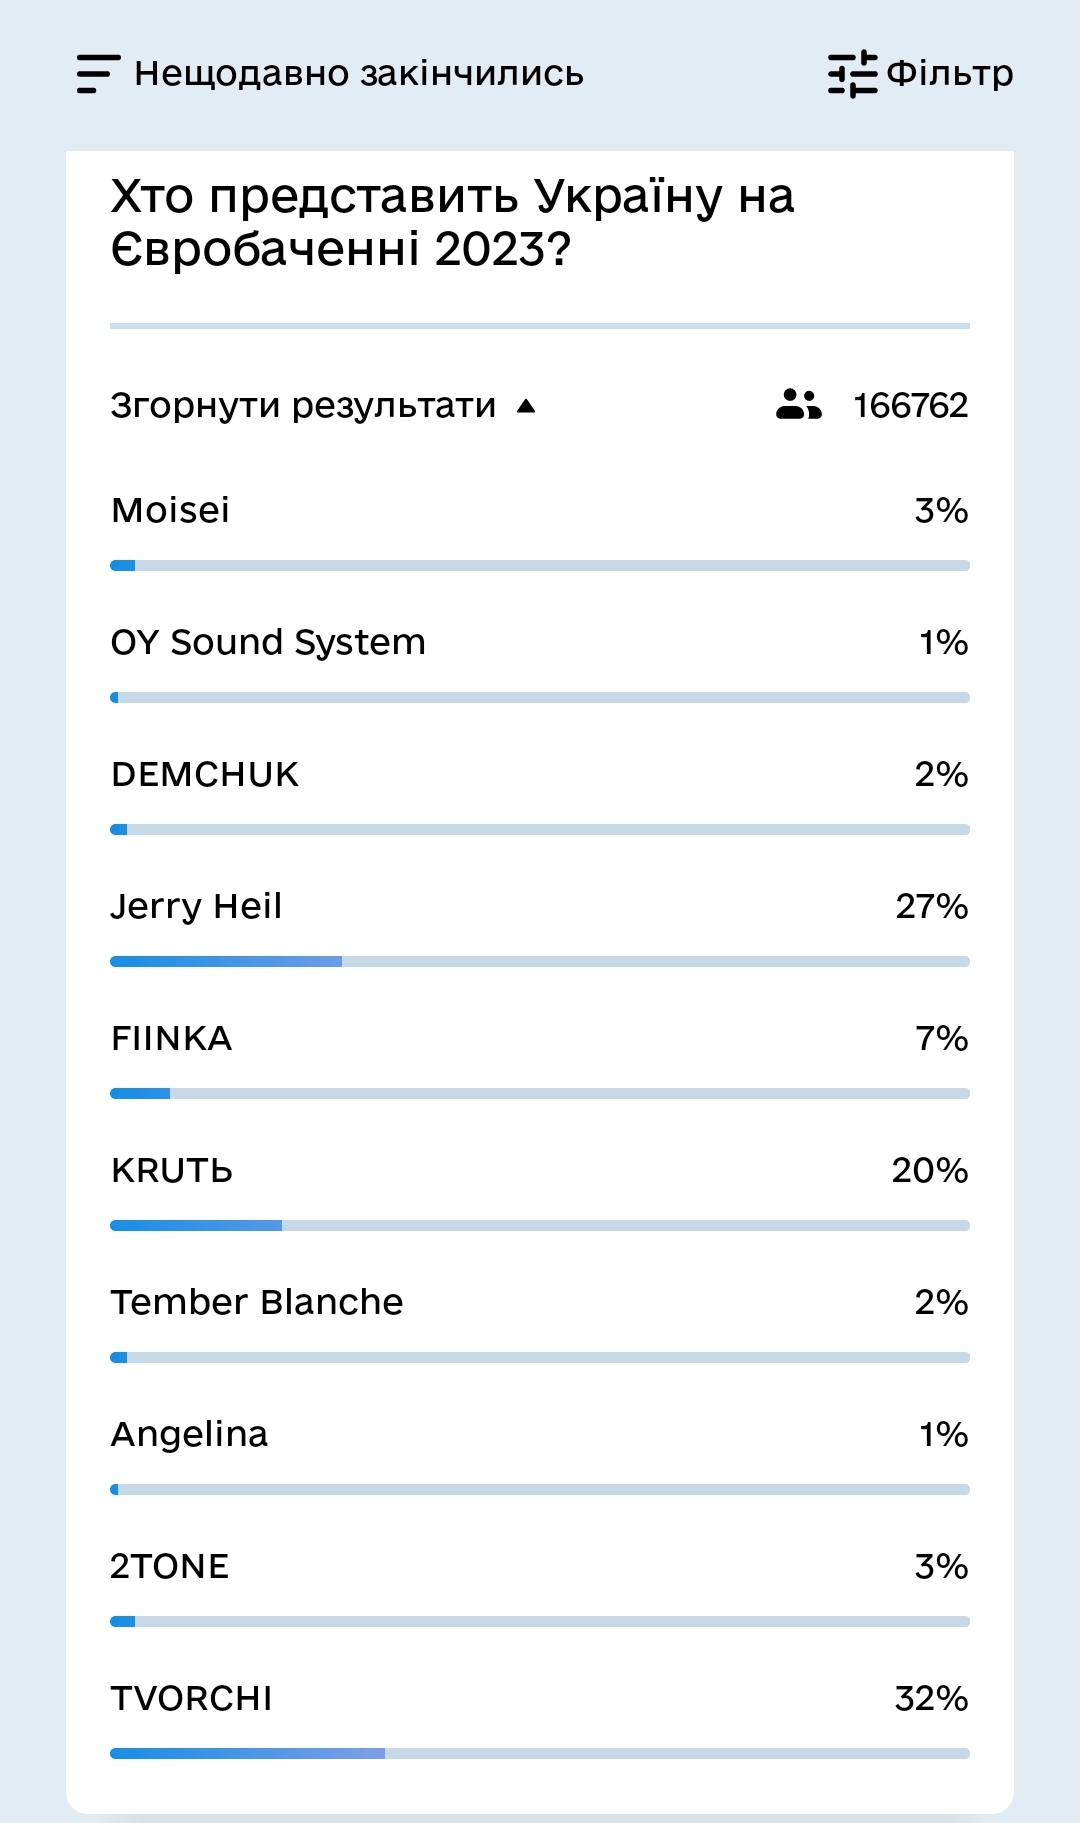 Победители Нацотбора TVORCHI получили 32% голосов украинцев, OY Sound System и Angelina по 1% фото 2